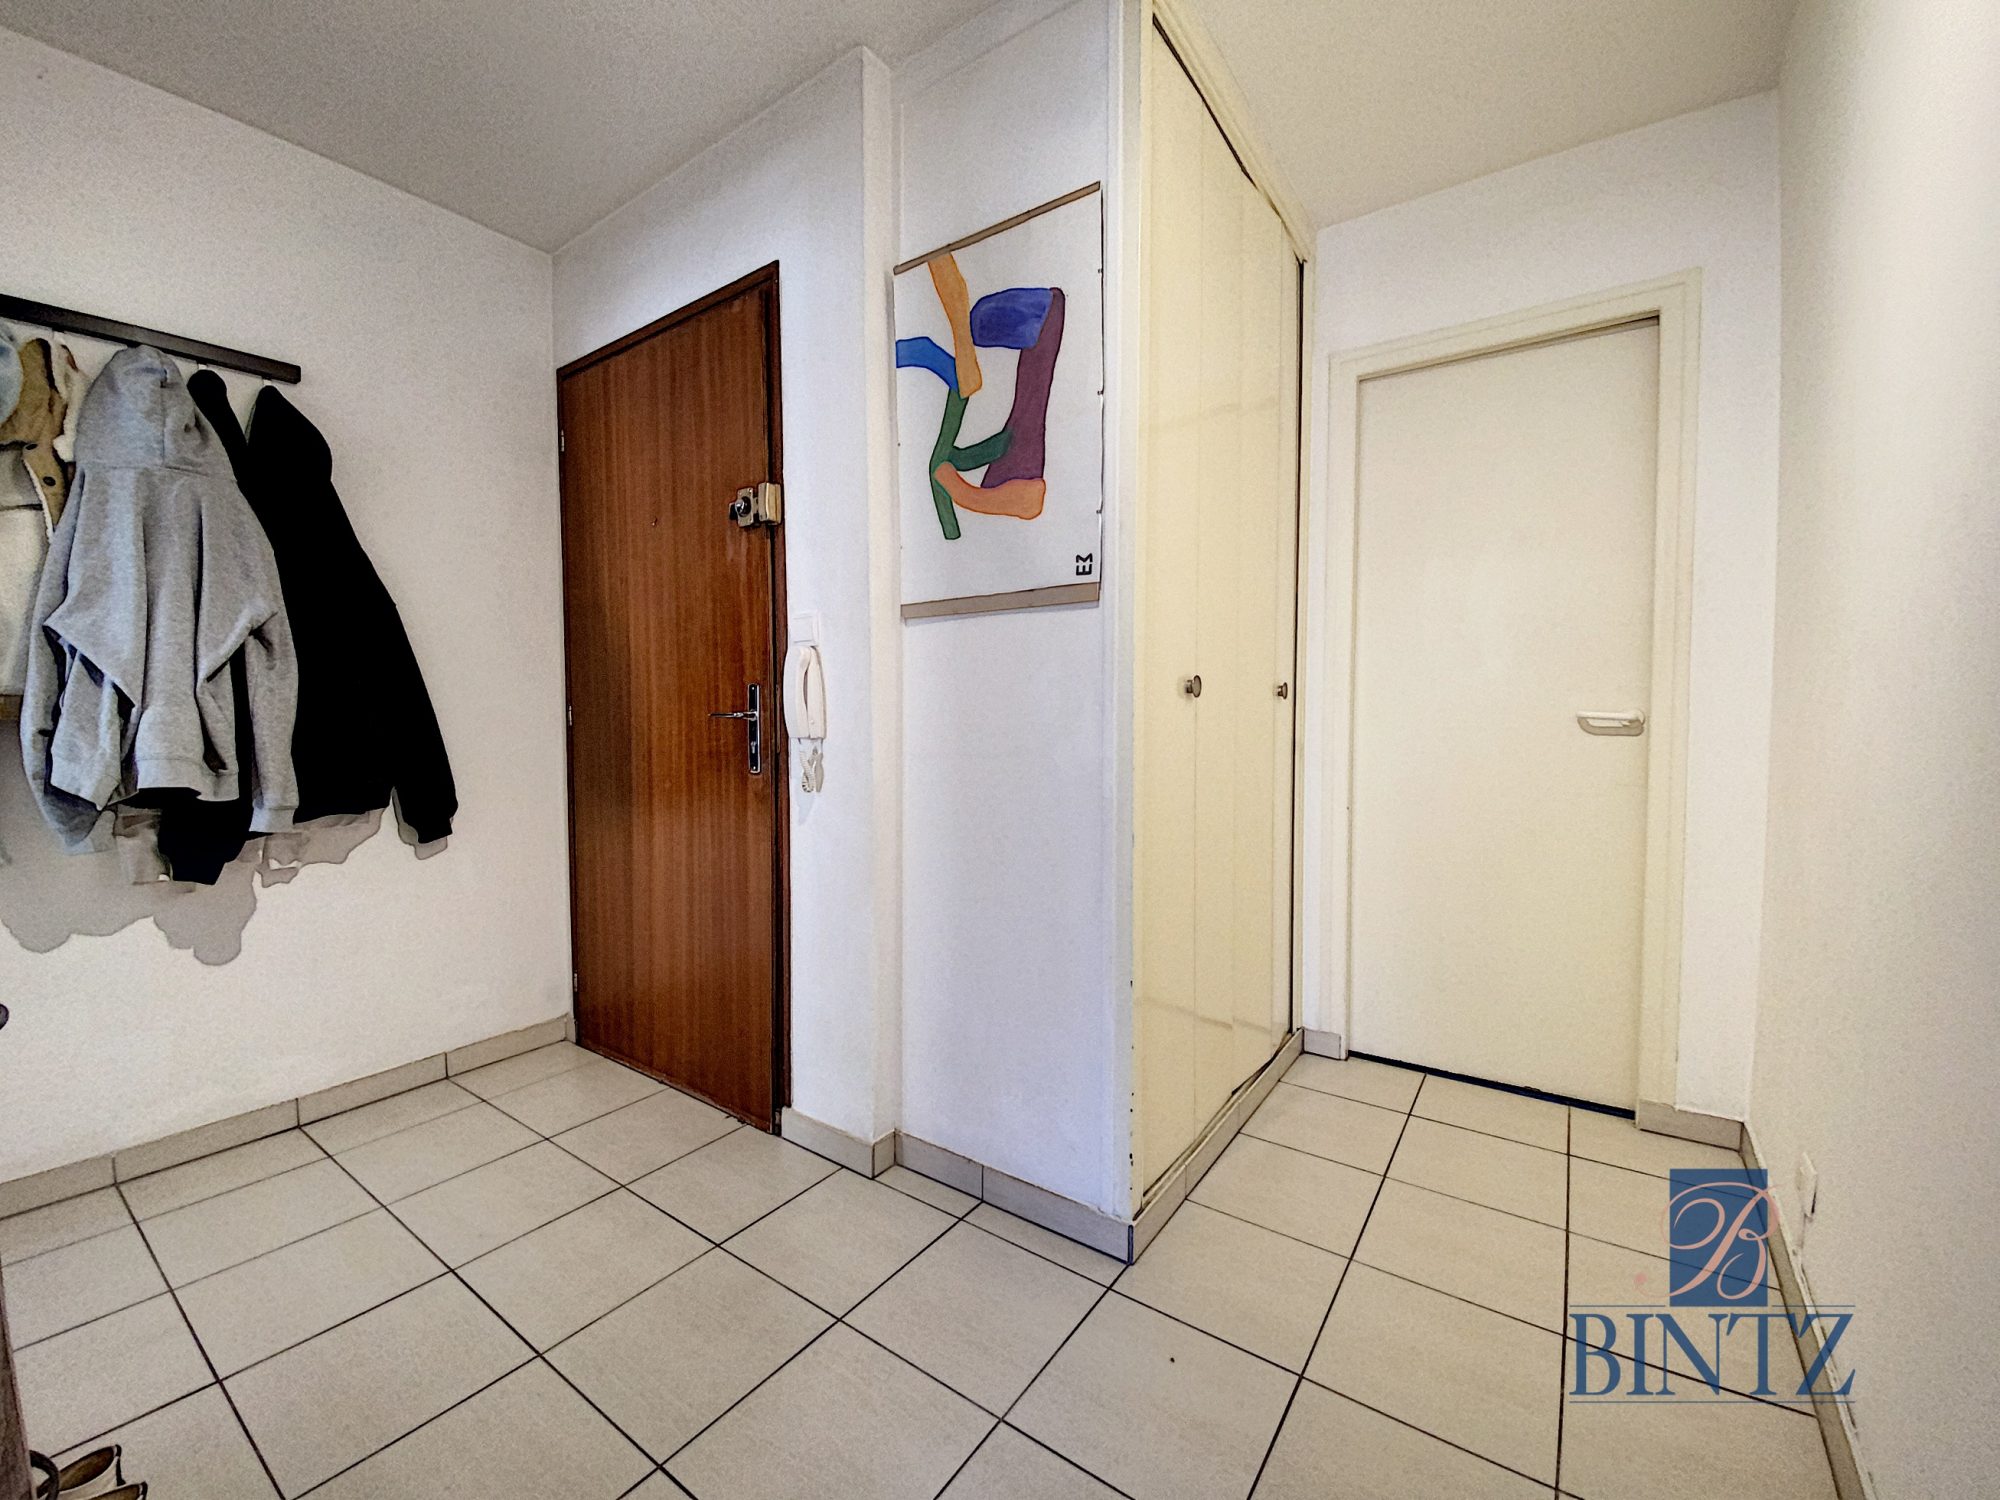 2 pièces proche de la faculté de médecine - location appartement Strasbourg - Bintz Immobilier - 4